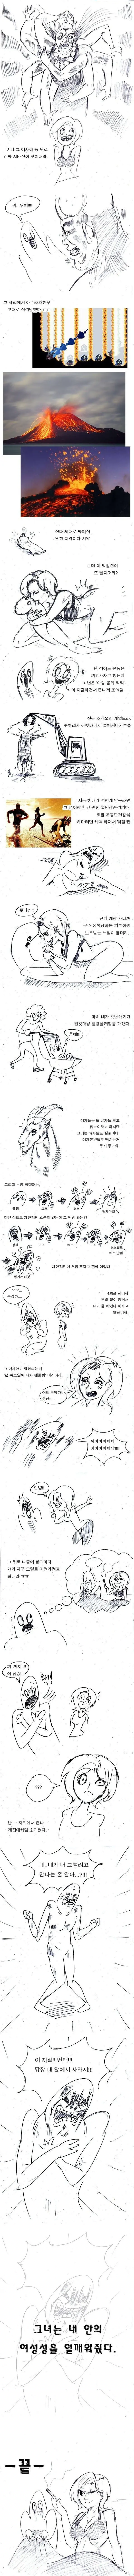 19금 주의) 역도선수랑 떡친 썰만화.jpg | mbong.kr 엠봉